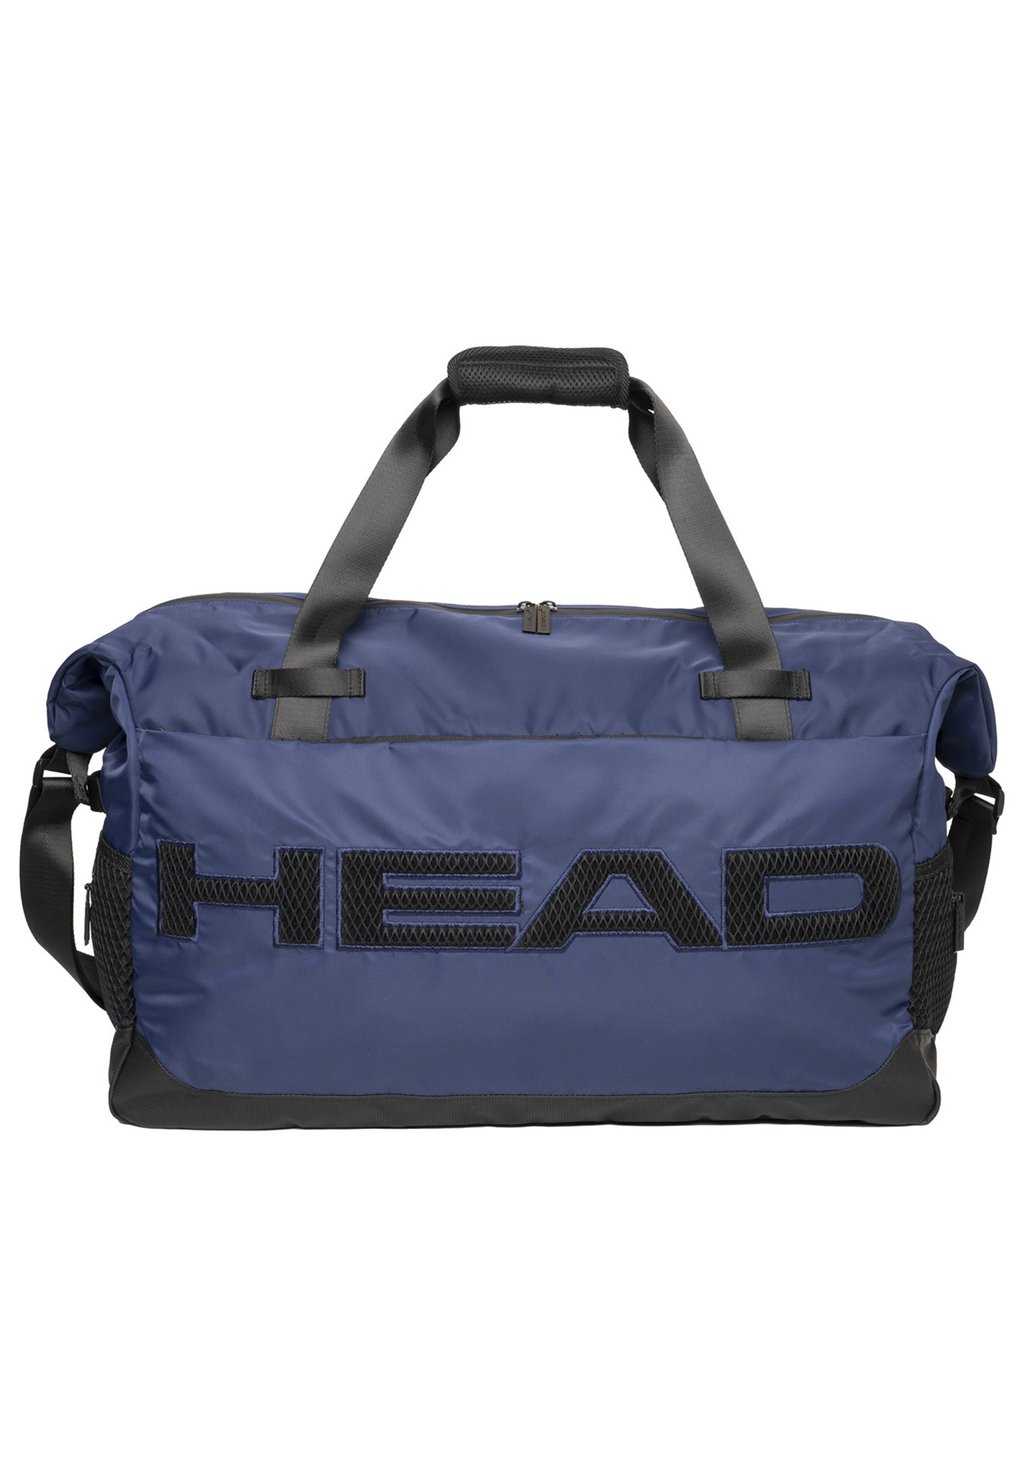 Спортивная сумка NET DUFFLE Head, цвет marineblau